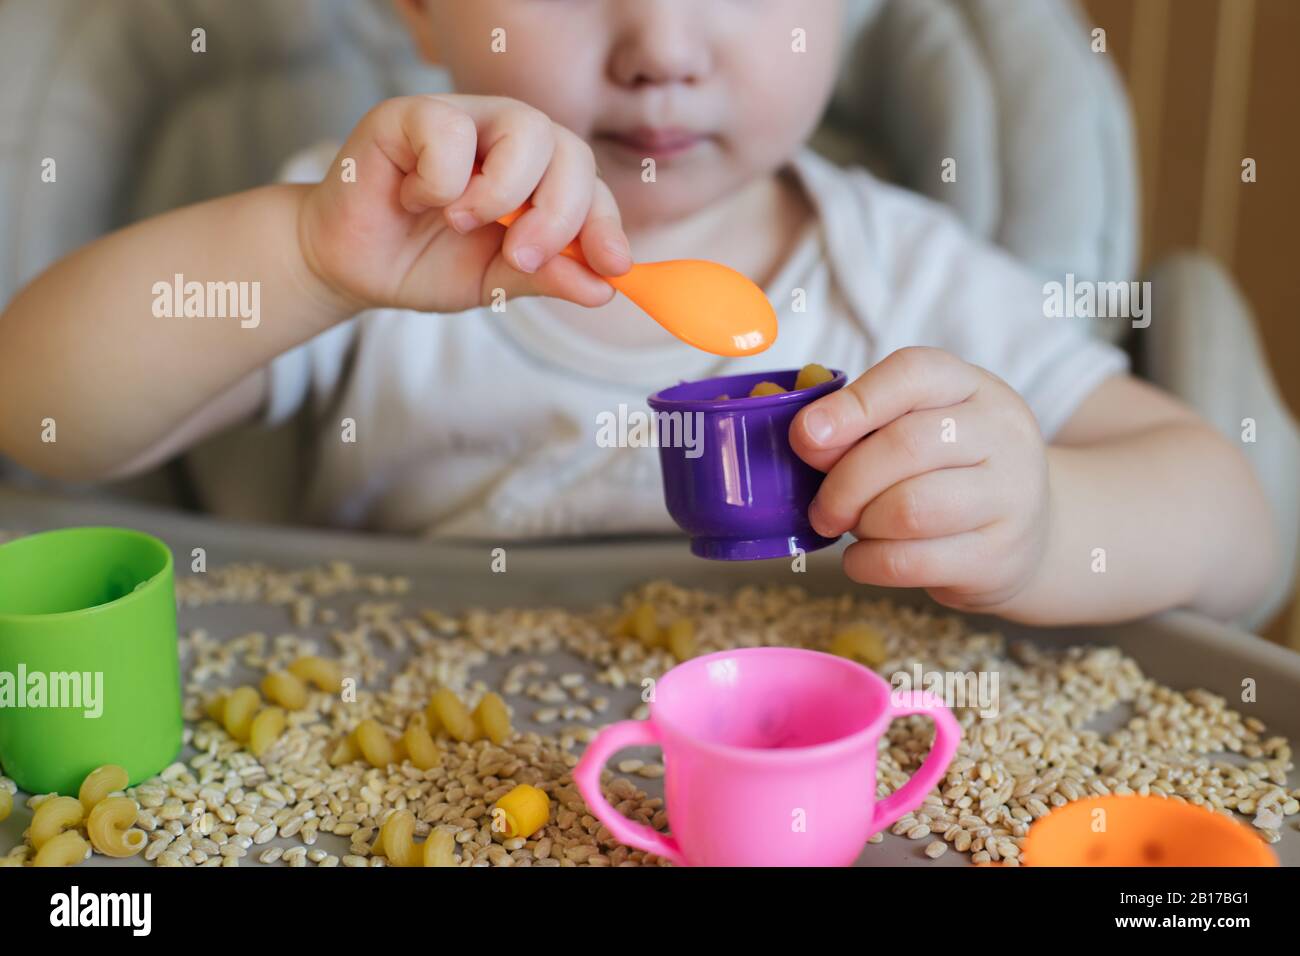 petit enfant verse une cuillère jaune jouet dans la tasse. Jeux avec produits. Technique de Montessori. Développement de compétences en moteurs fins chez les enfants Banque D'Images